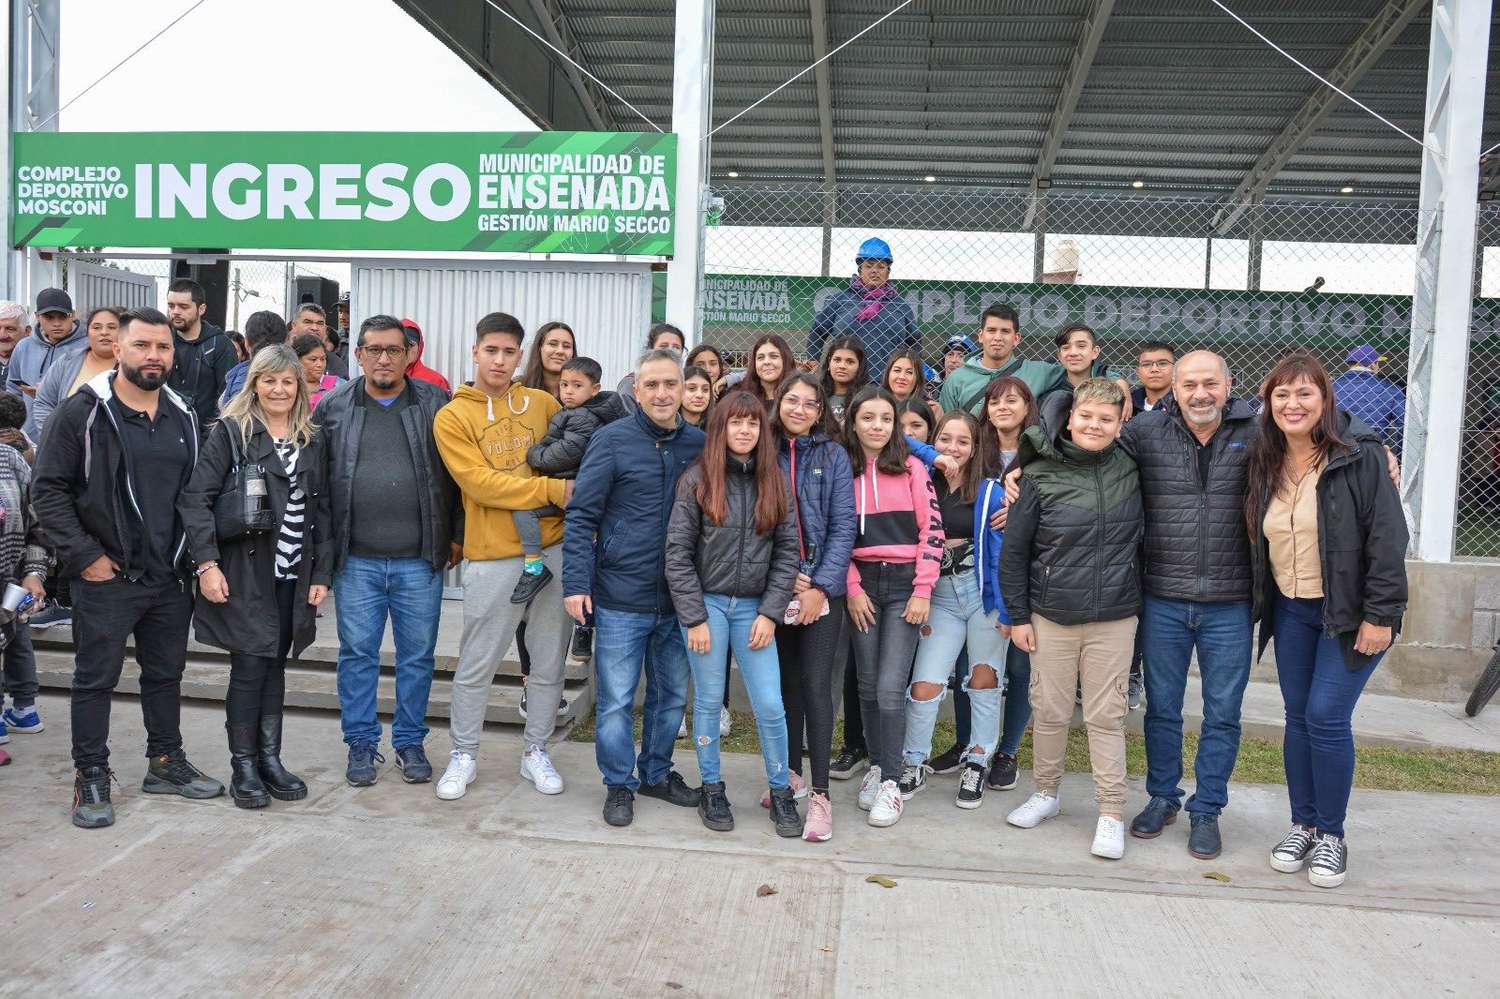 Ensenada: Secco inauguró un polideportivo financiado con el impuesto a las grandes fortunas